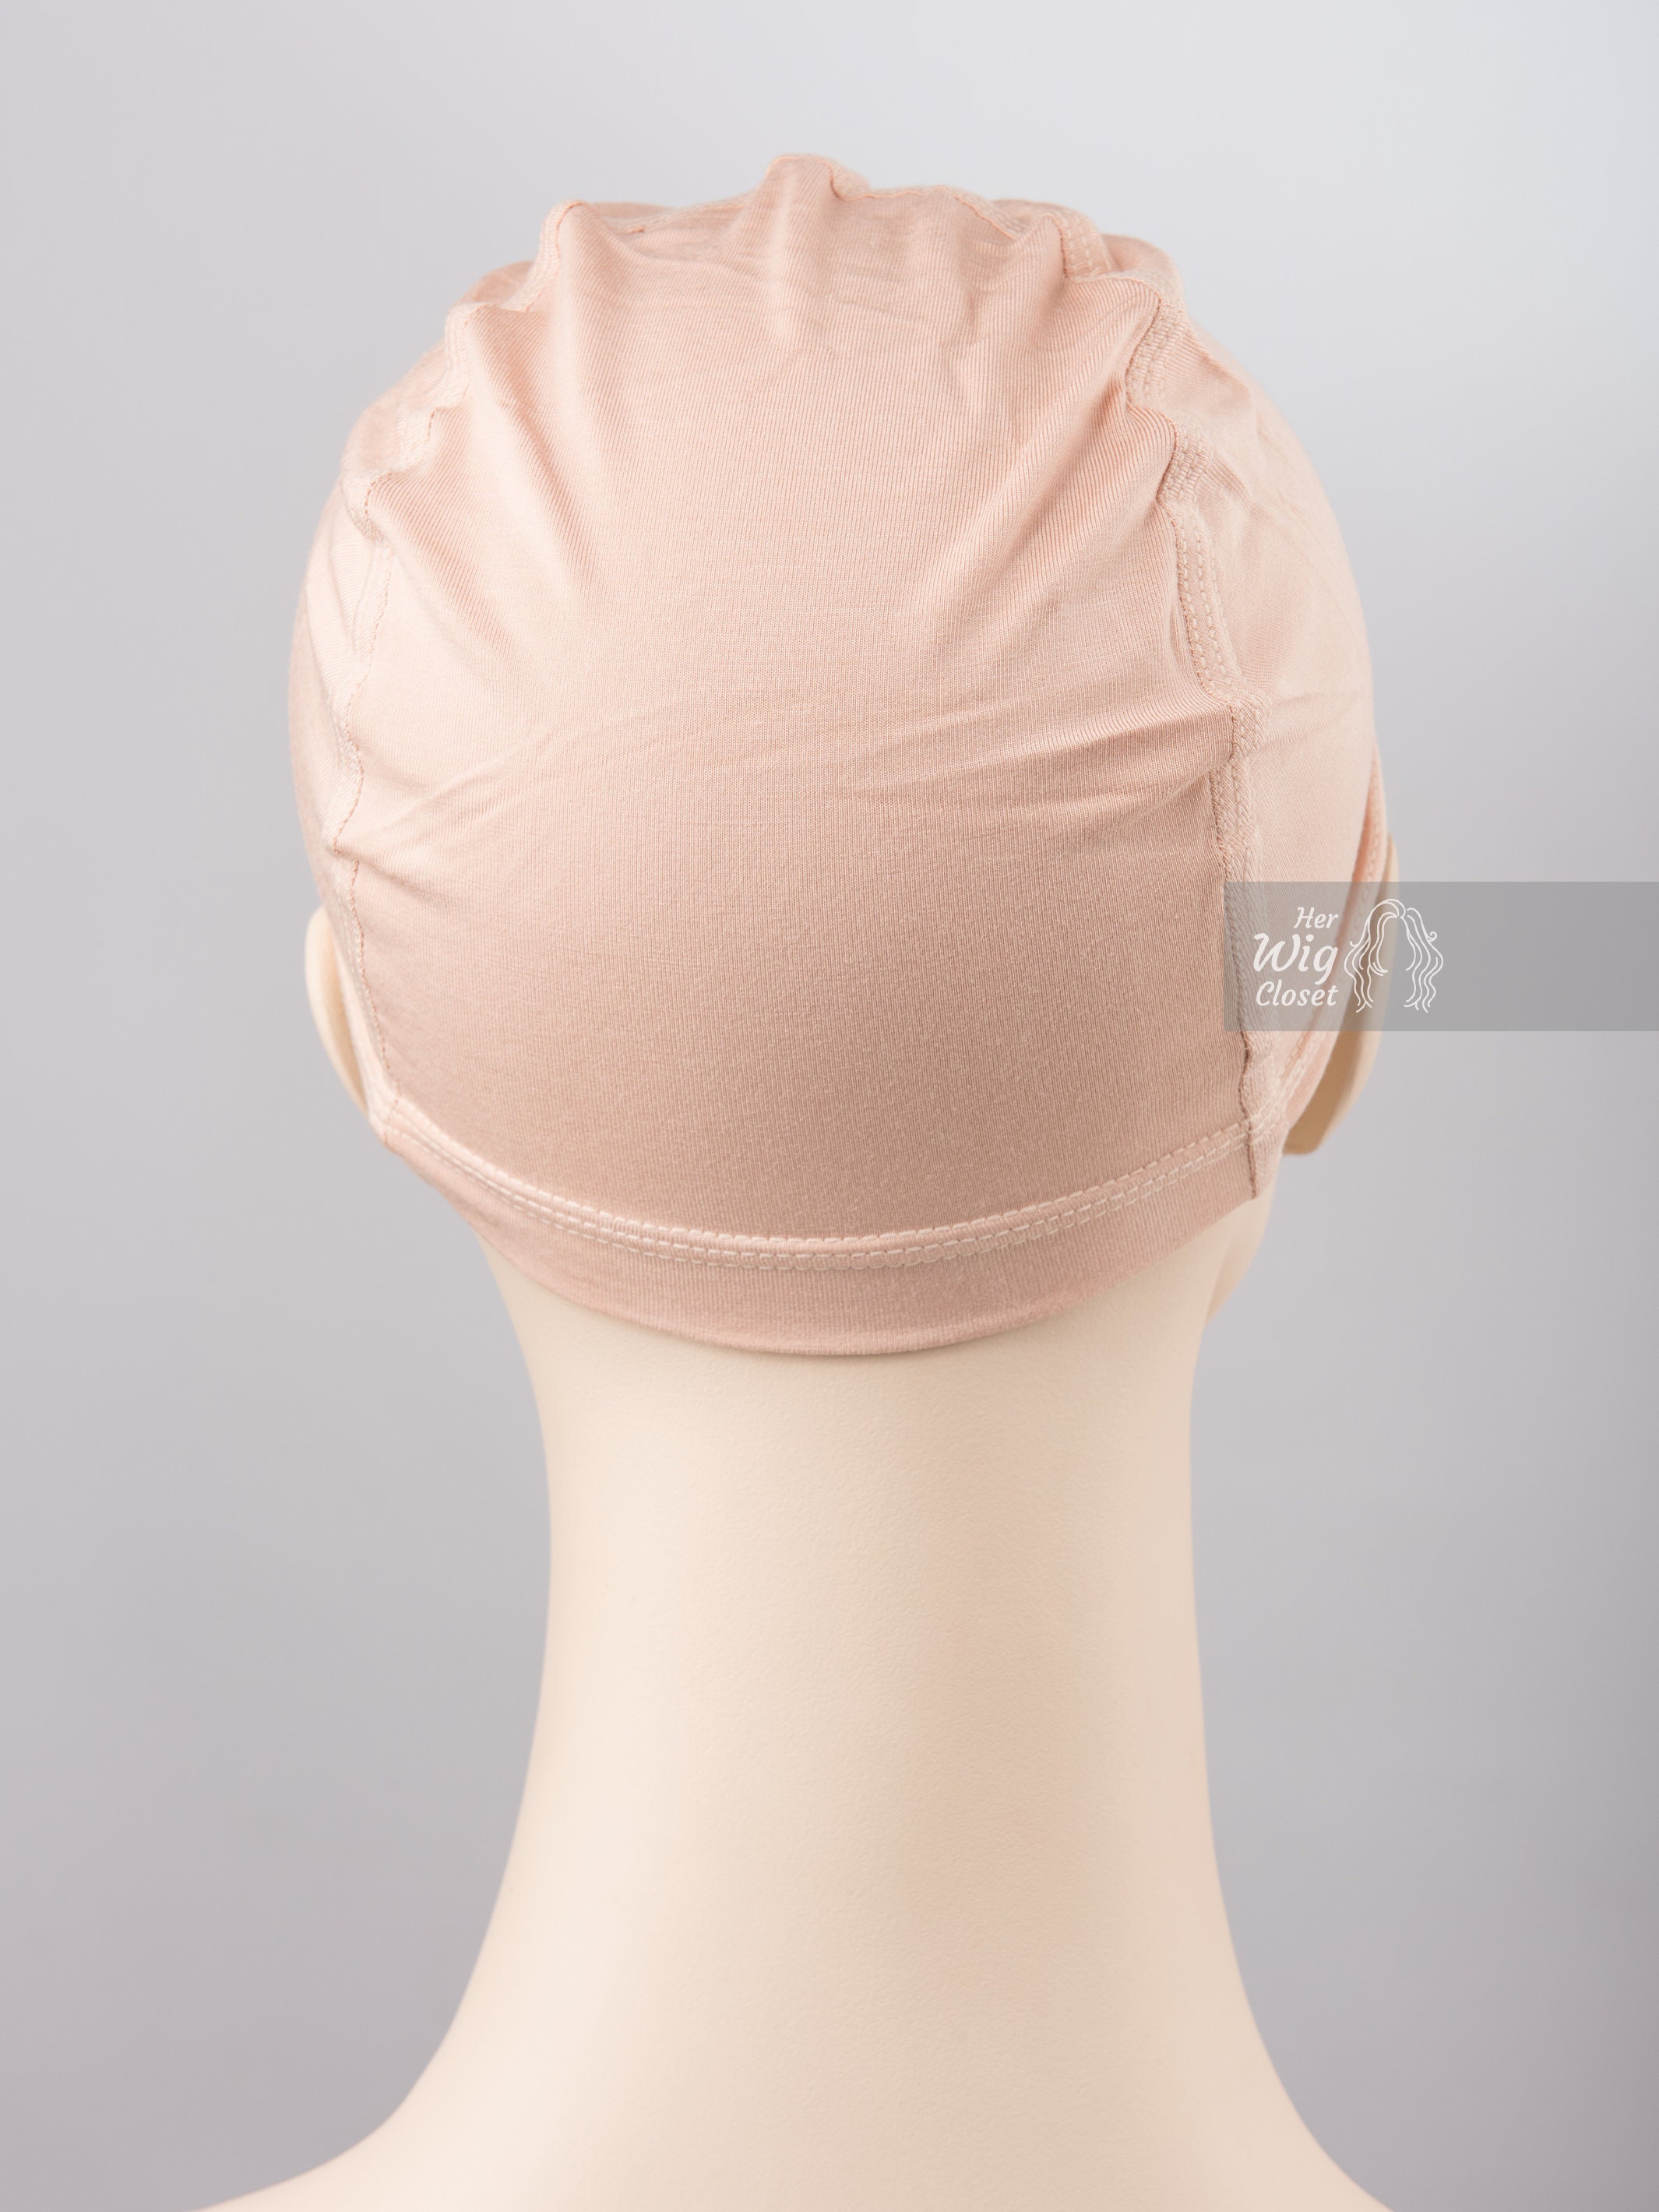 name - bonnet bambou - Perruque médicale